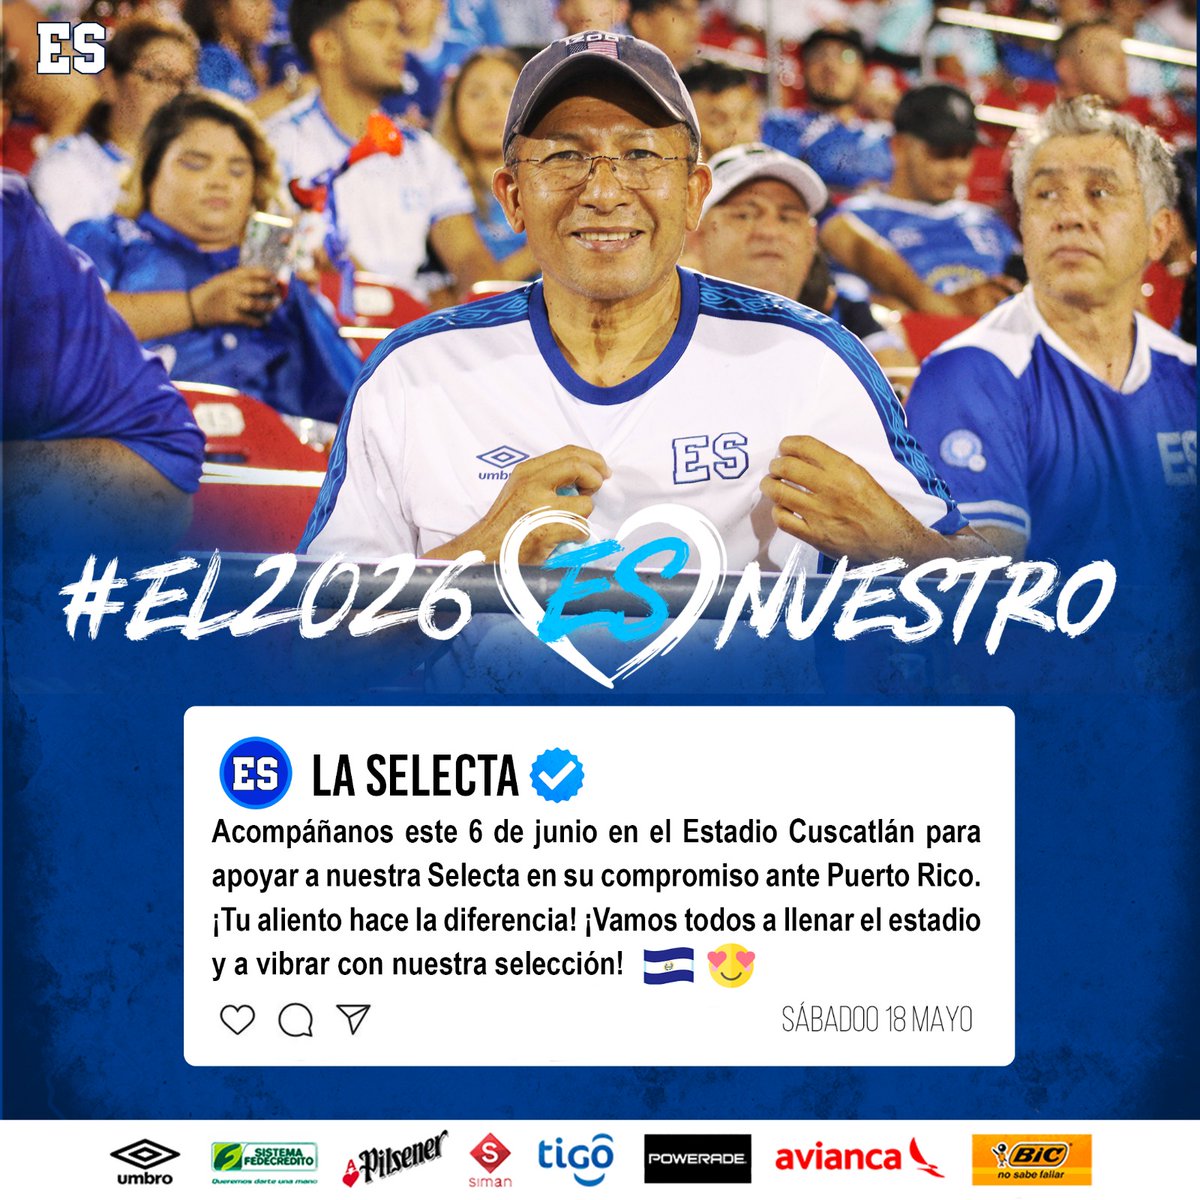 👕💙🤍 ¡ES momento de vestir nuestros colores Azul y Blanco! El Estadio Cuscatlán nos espera este 6 de junio, apoyemos a #LaSelecta en su camino mundialista #El2026ESNuestro #RoadTo2026 #ESalMundial